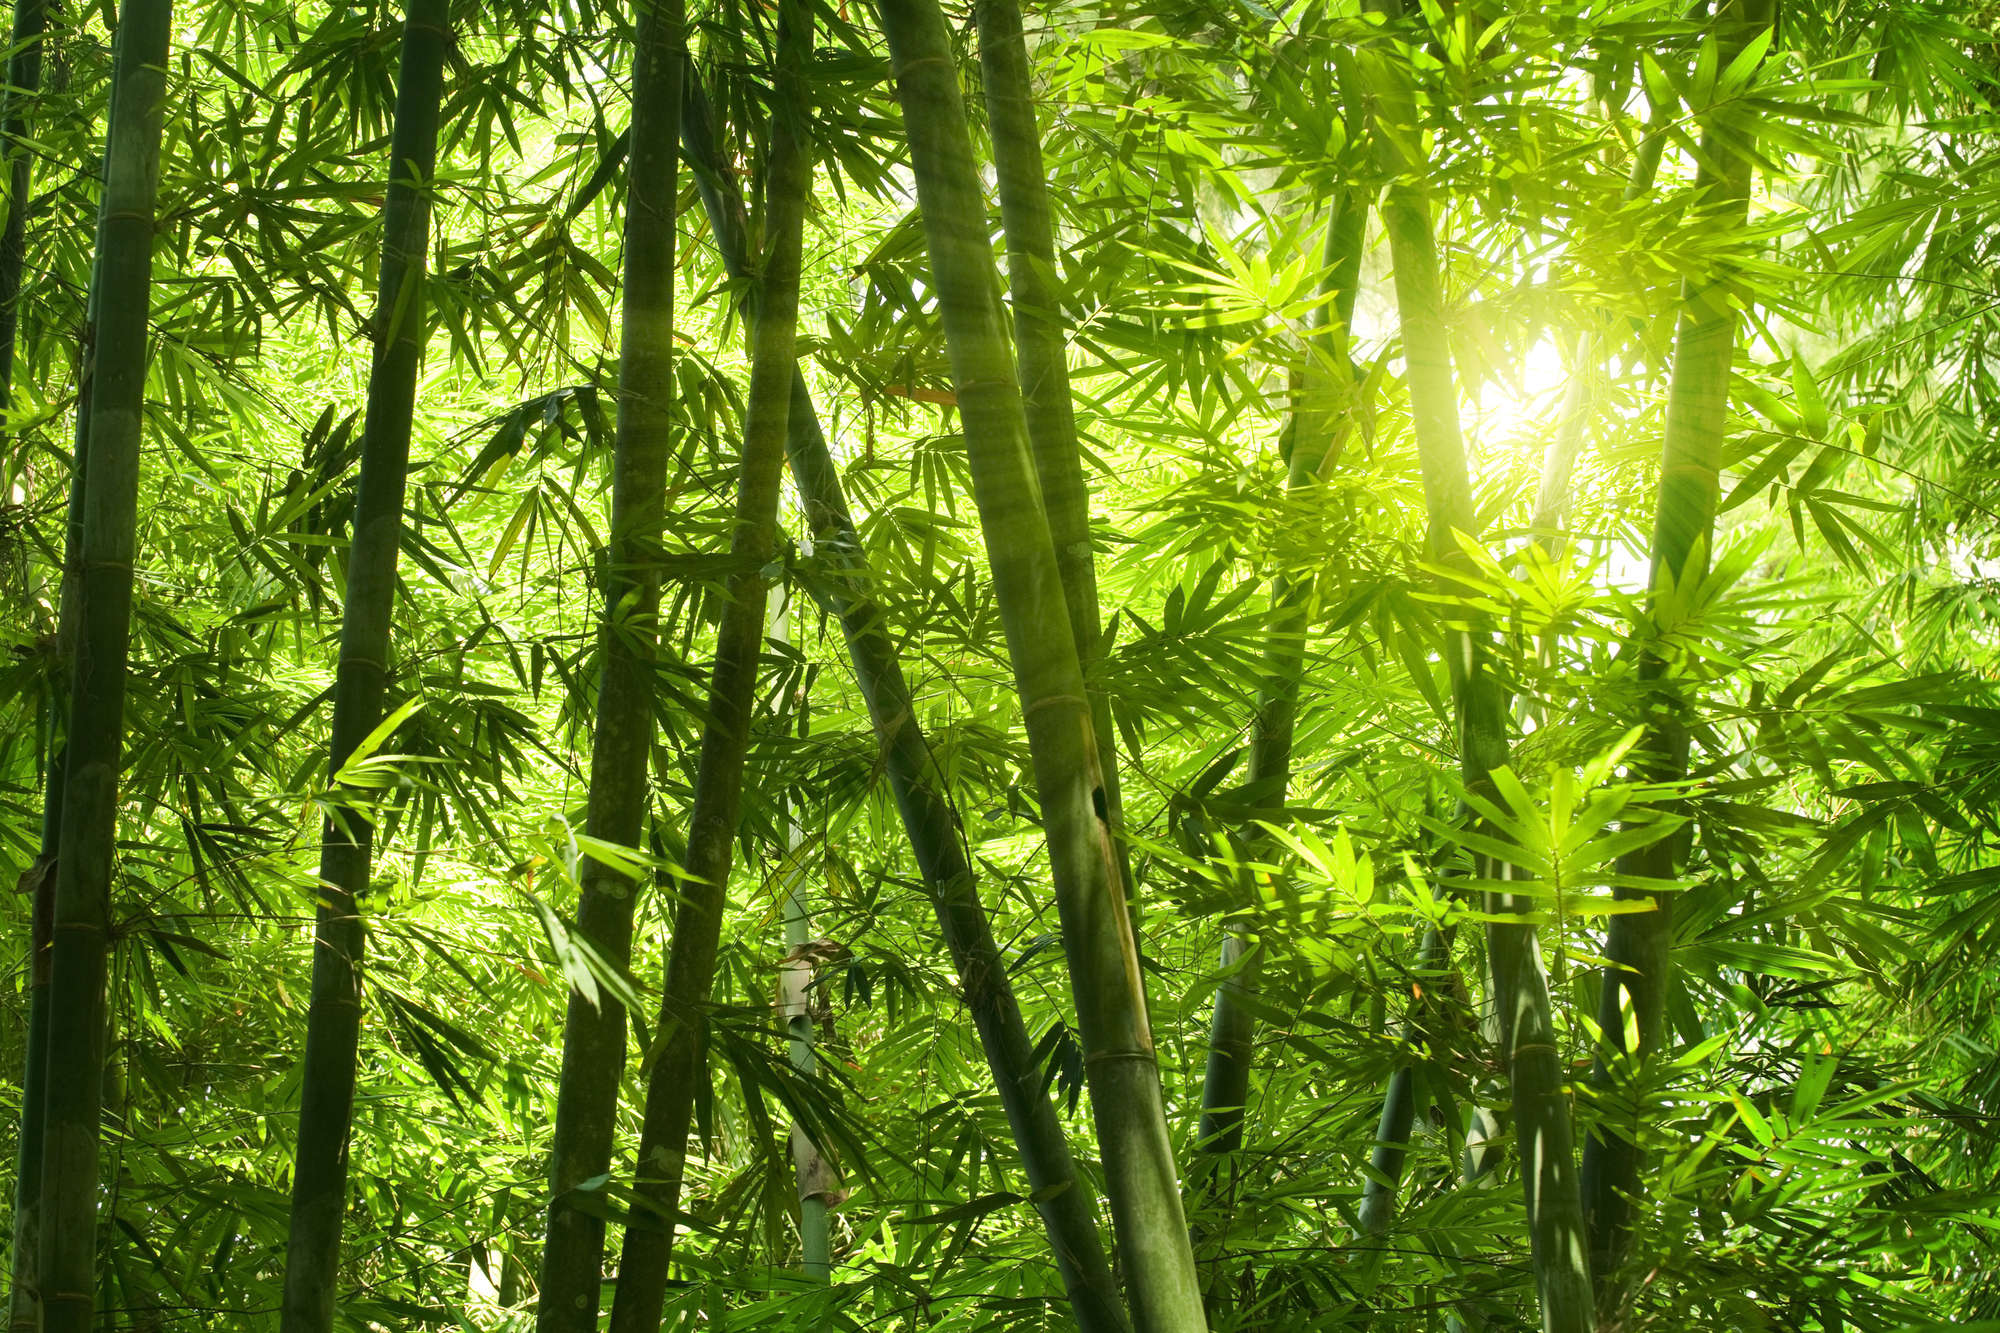             Natur Fototapete Bambuswald Motiv auf Matt Glattvlies
        